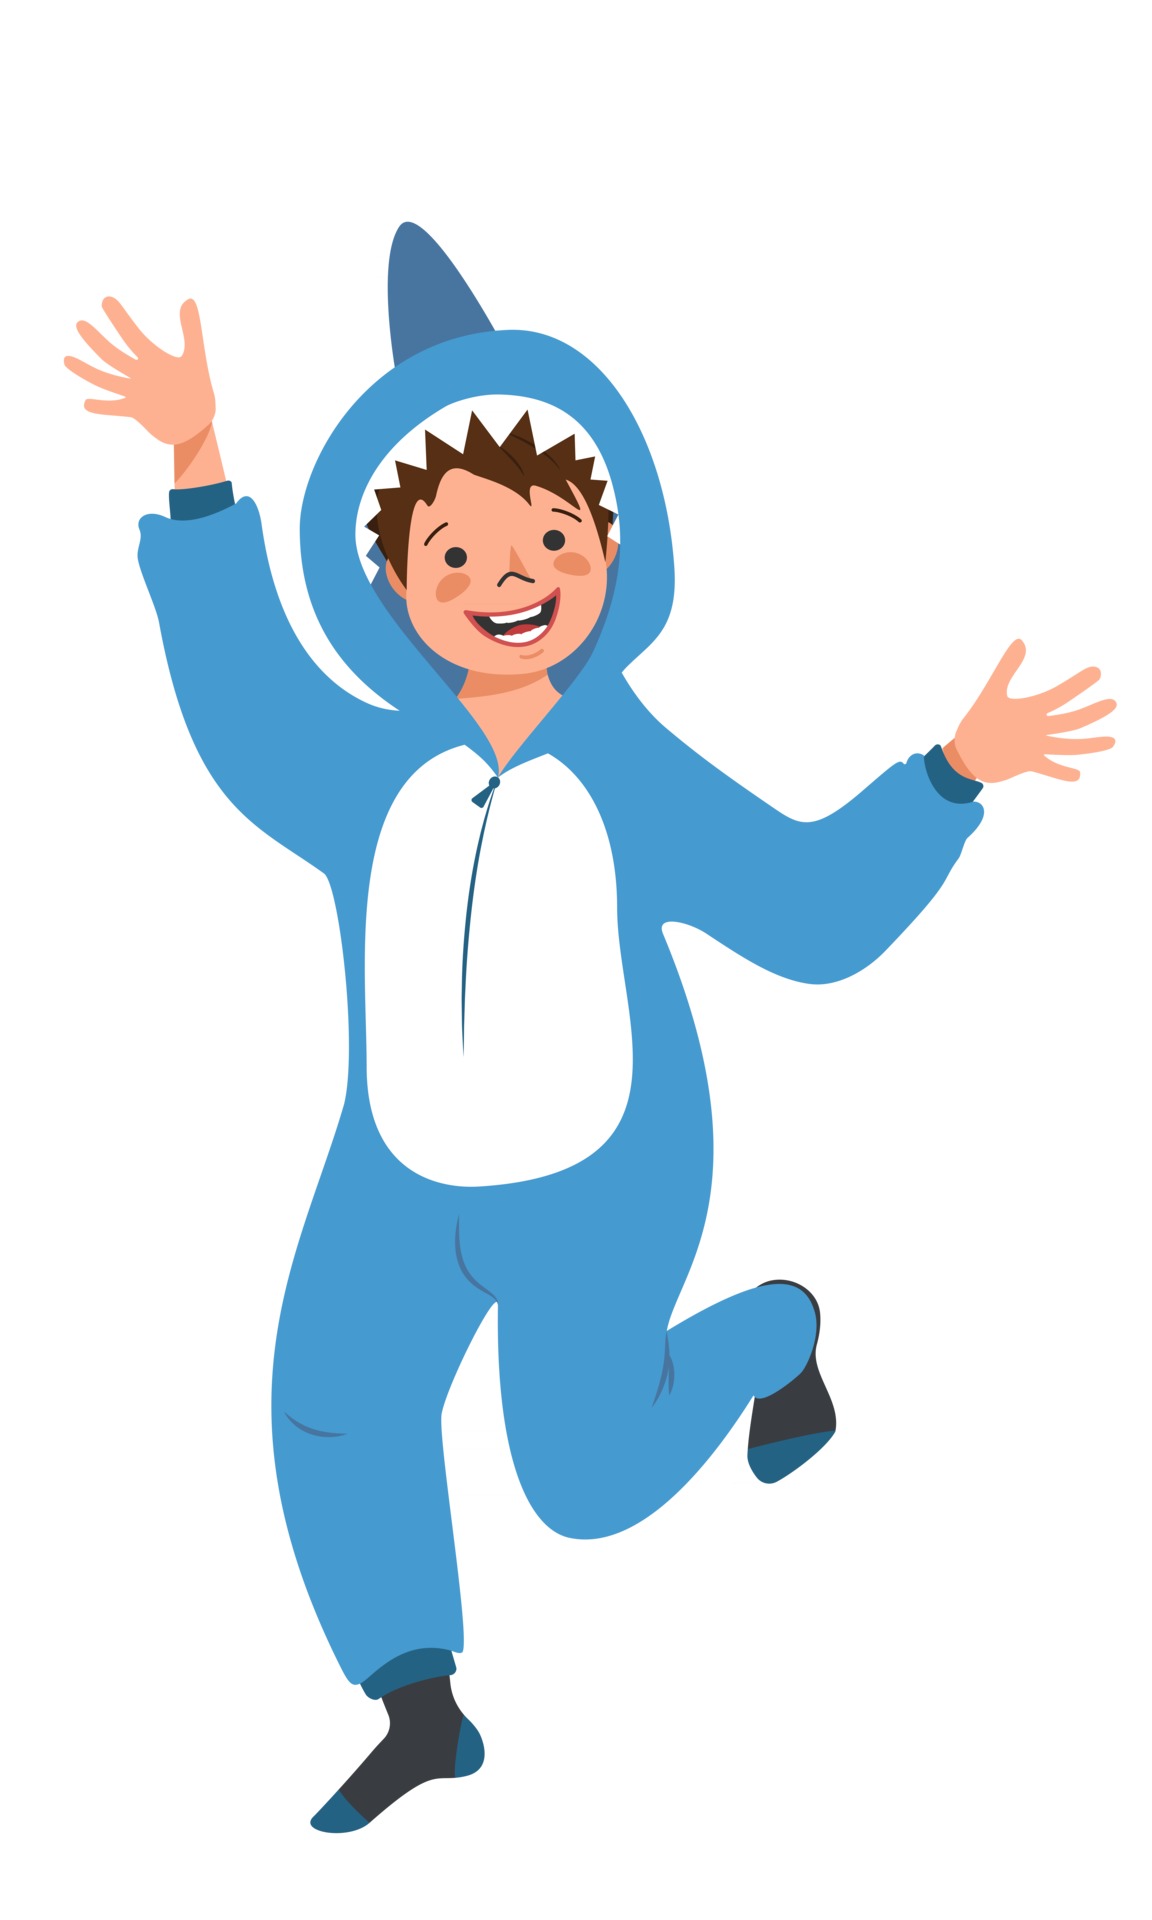 niño en traje de carnaval de tiburón. fiesta de pijamas para niños. niño con mono o kigurumi 2591958 en Vecteezy